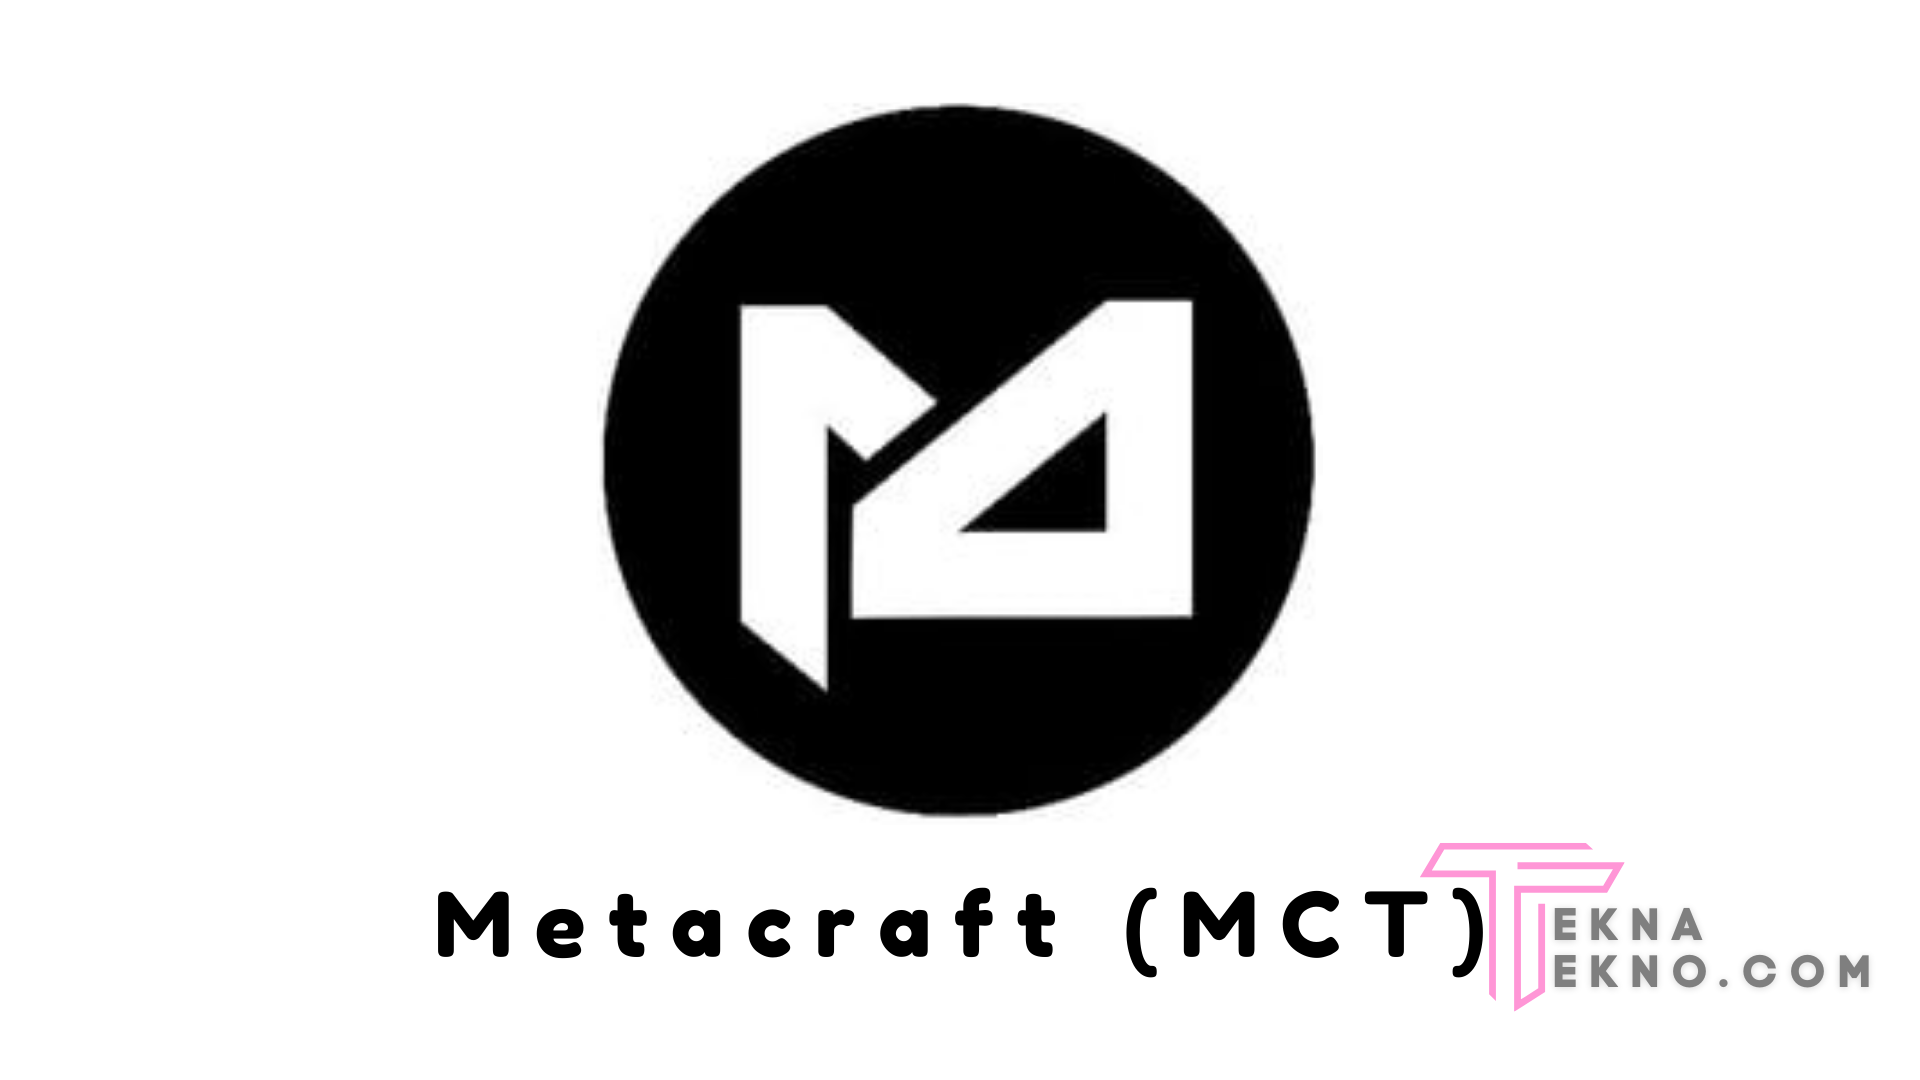 Mengenal Apa itu Metacraft (MCT)